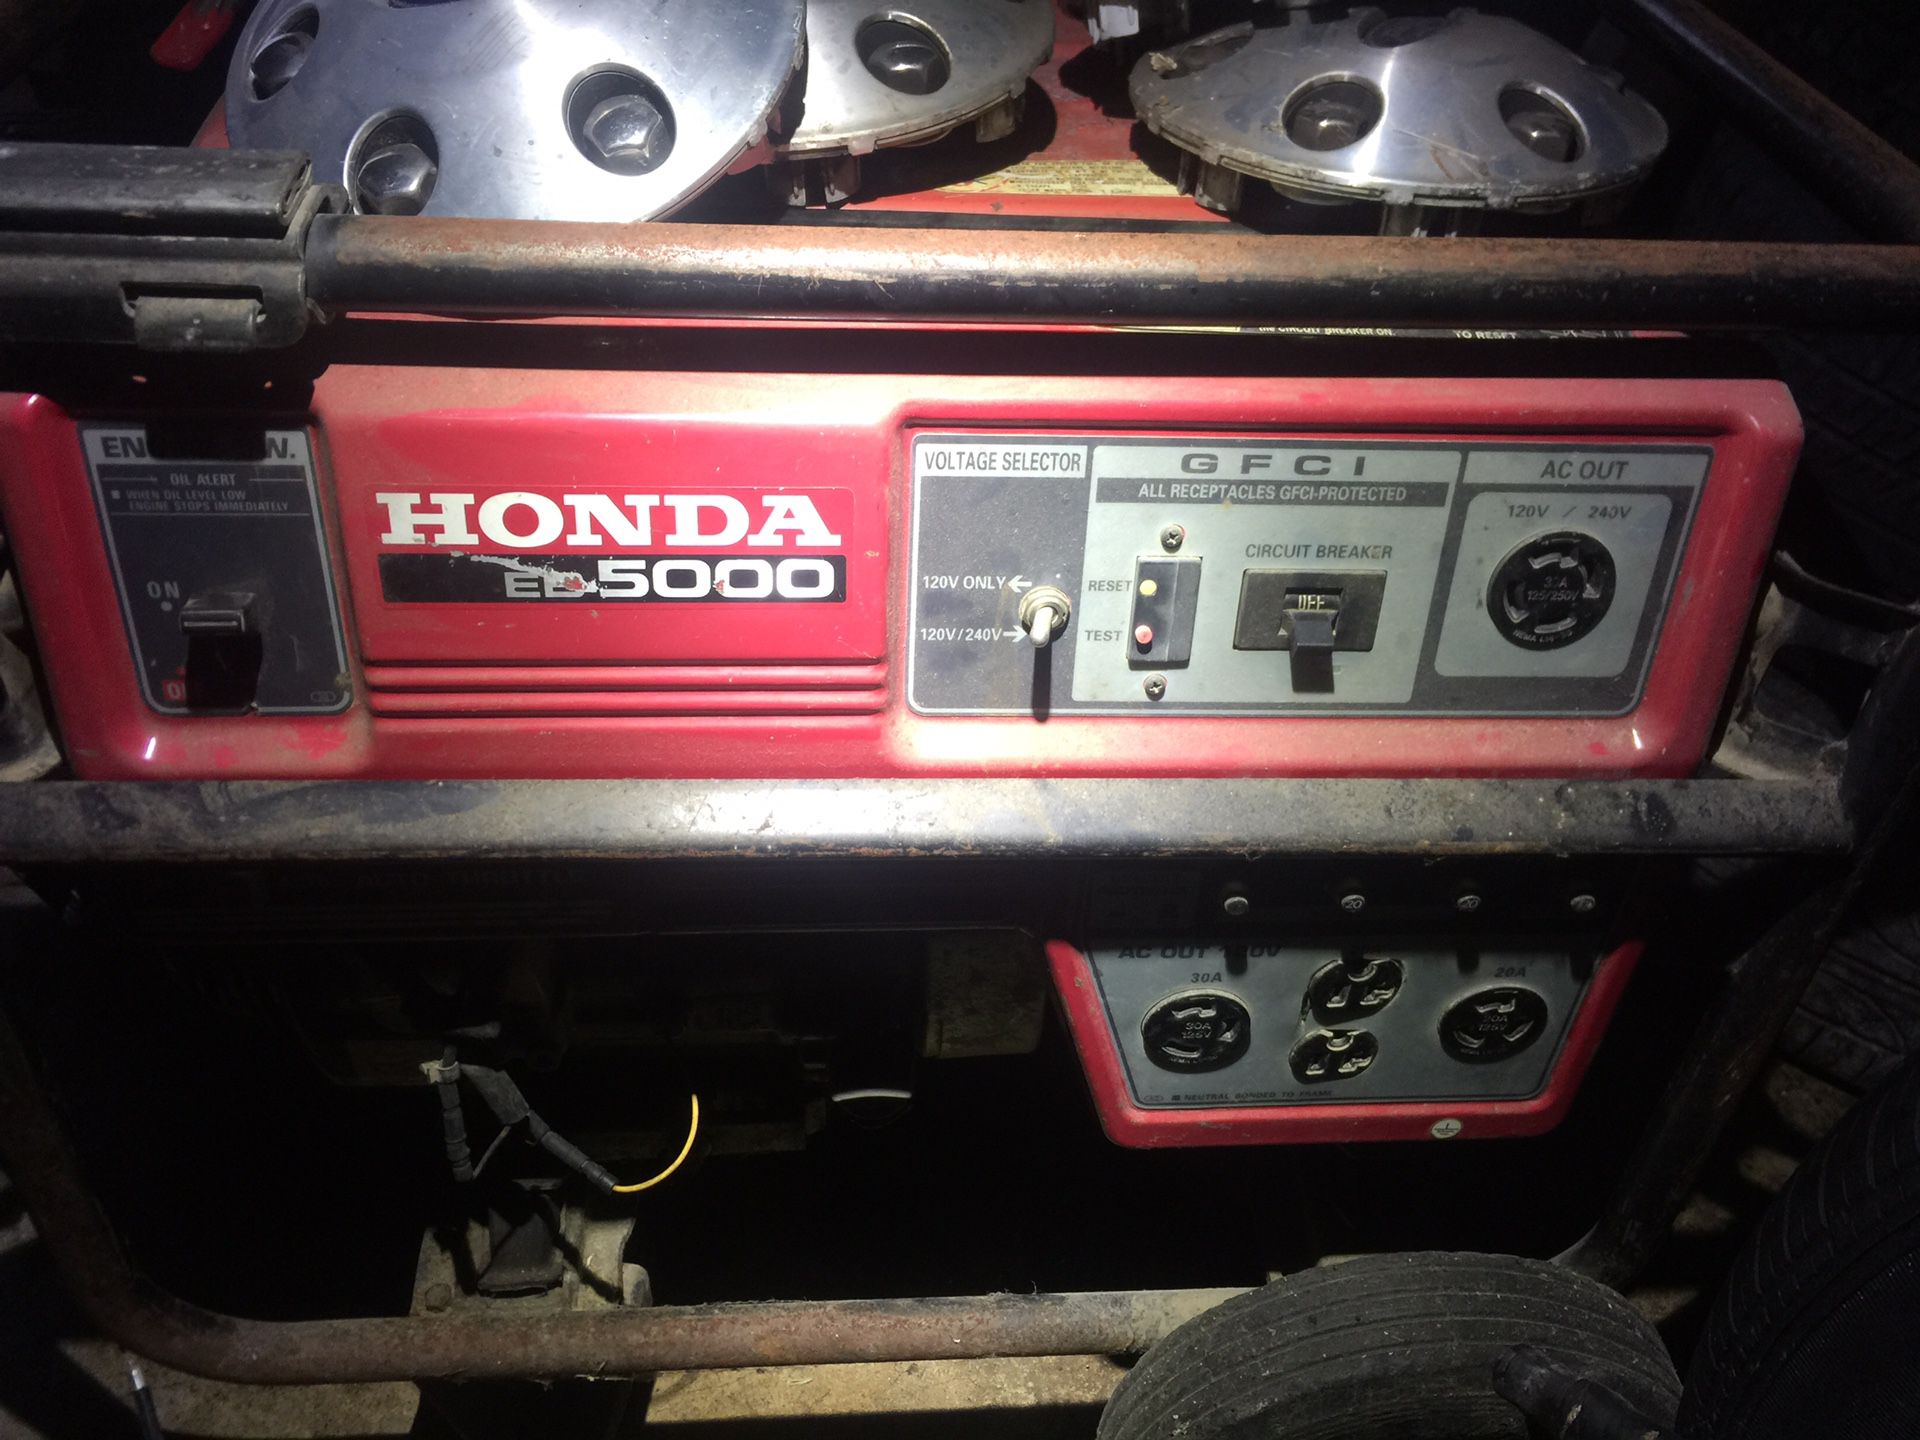 Honda eb5000 generator